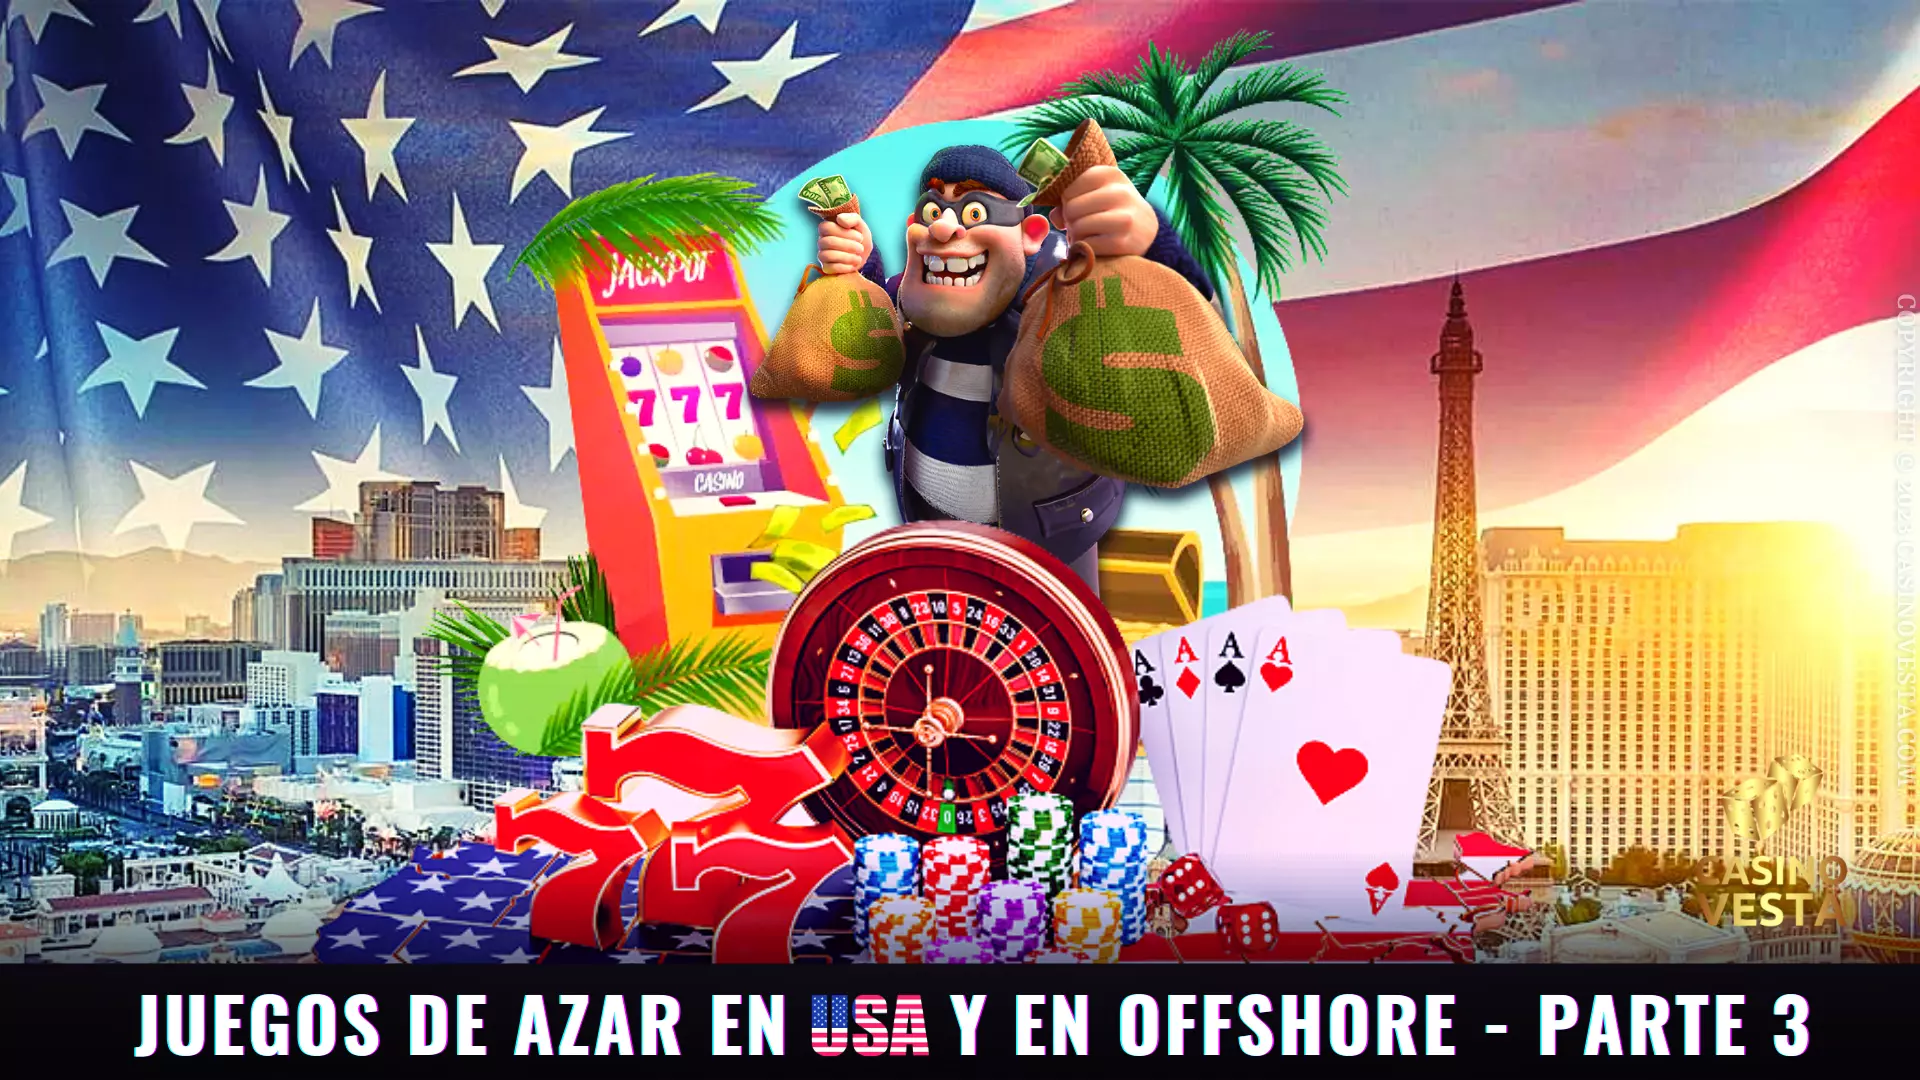 Juegos de azar EE.UU. Offshore Parte 3